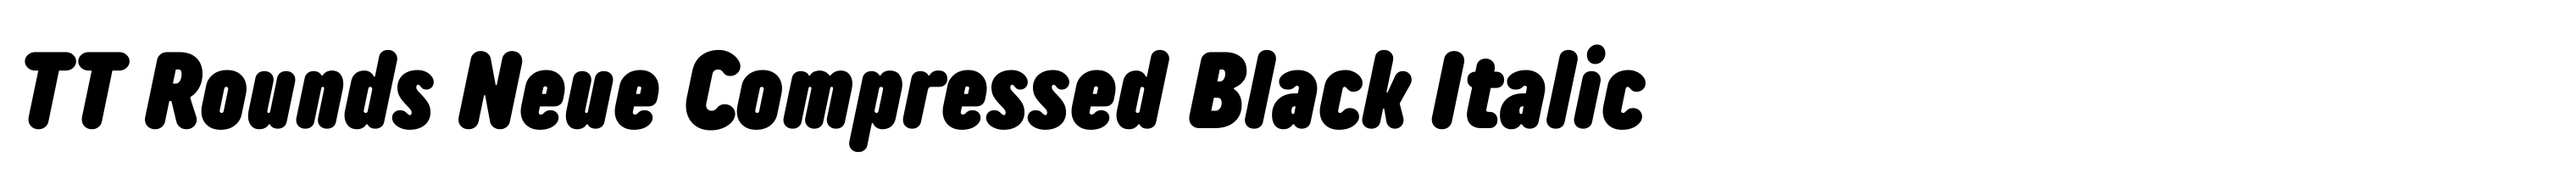 TT Rounds Neue Compressed Black Italic